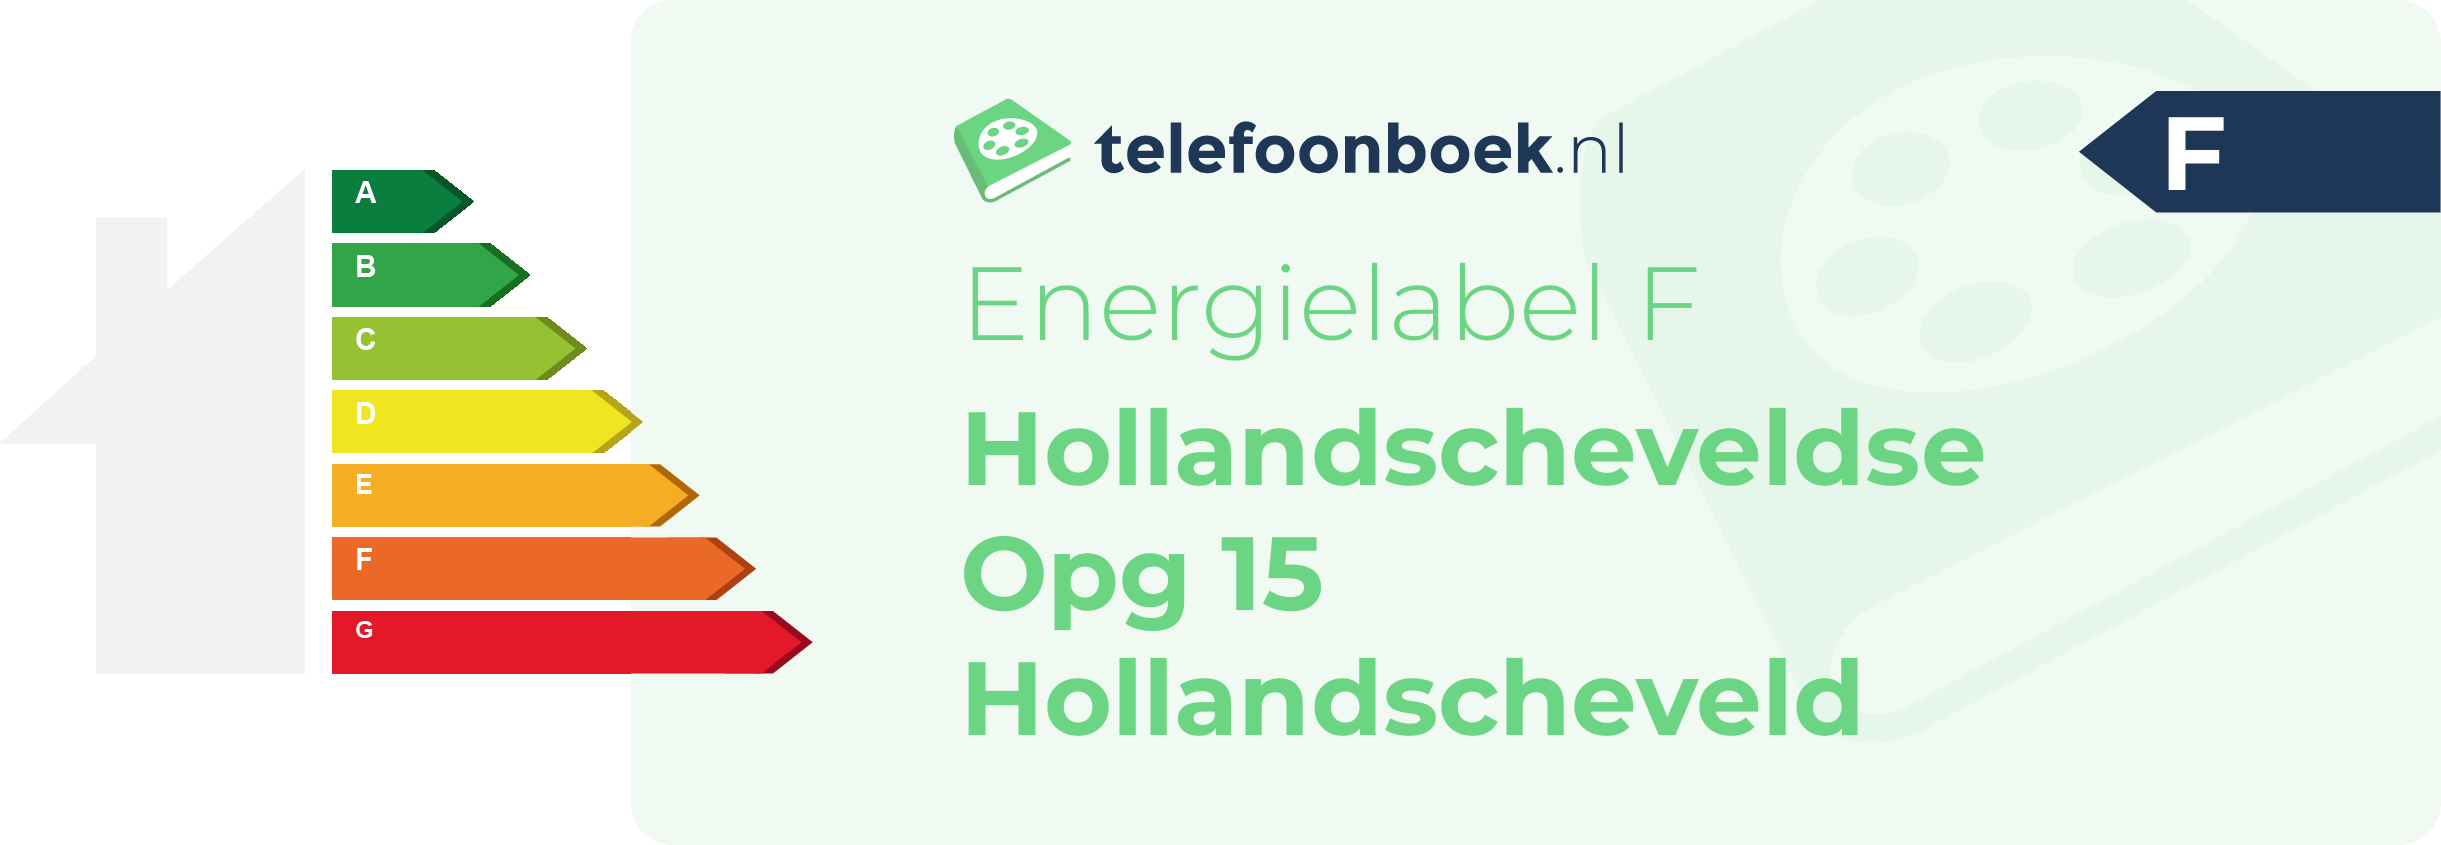 Energielabel Hollandscheveldse Opg 15 Hollandscheveld